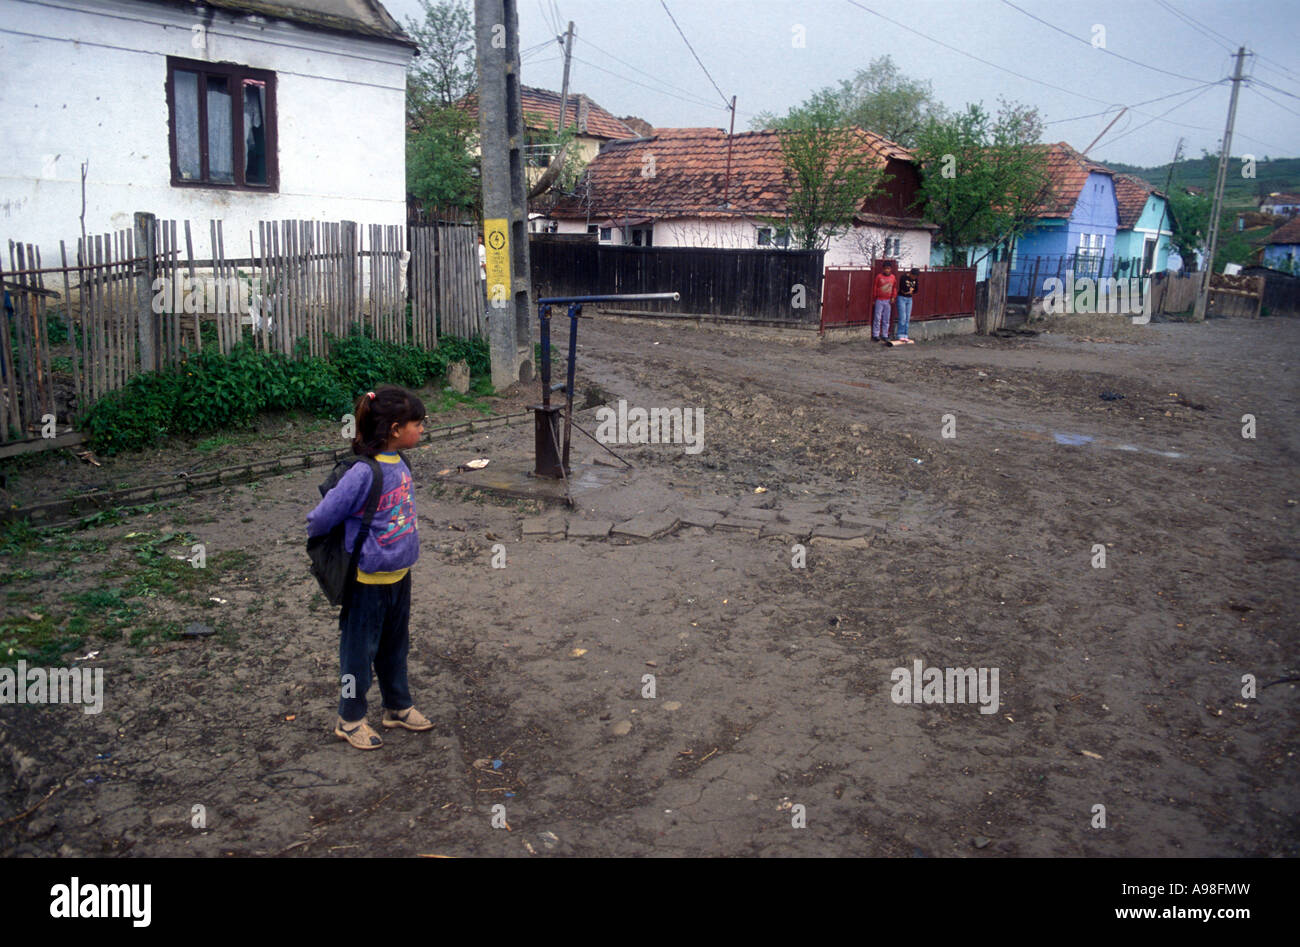 Sezione di zingaro del villaggio rumeno di Soard che mostra la strada sterrata e piccole case di livello. Una piccola ragazza è in attesa. Foto Stock